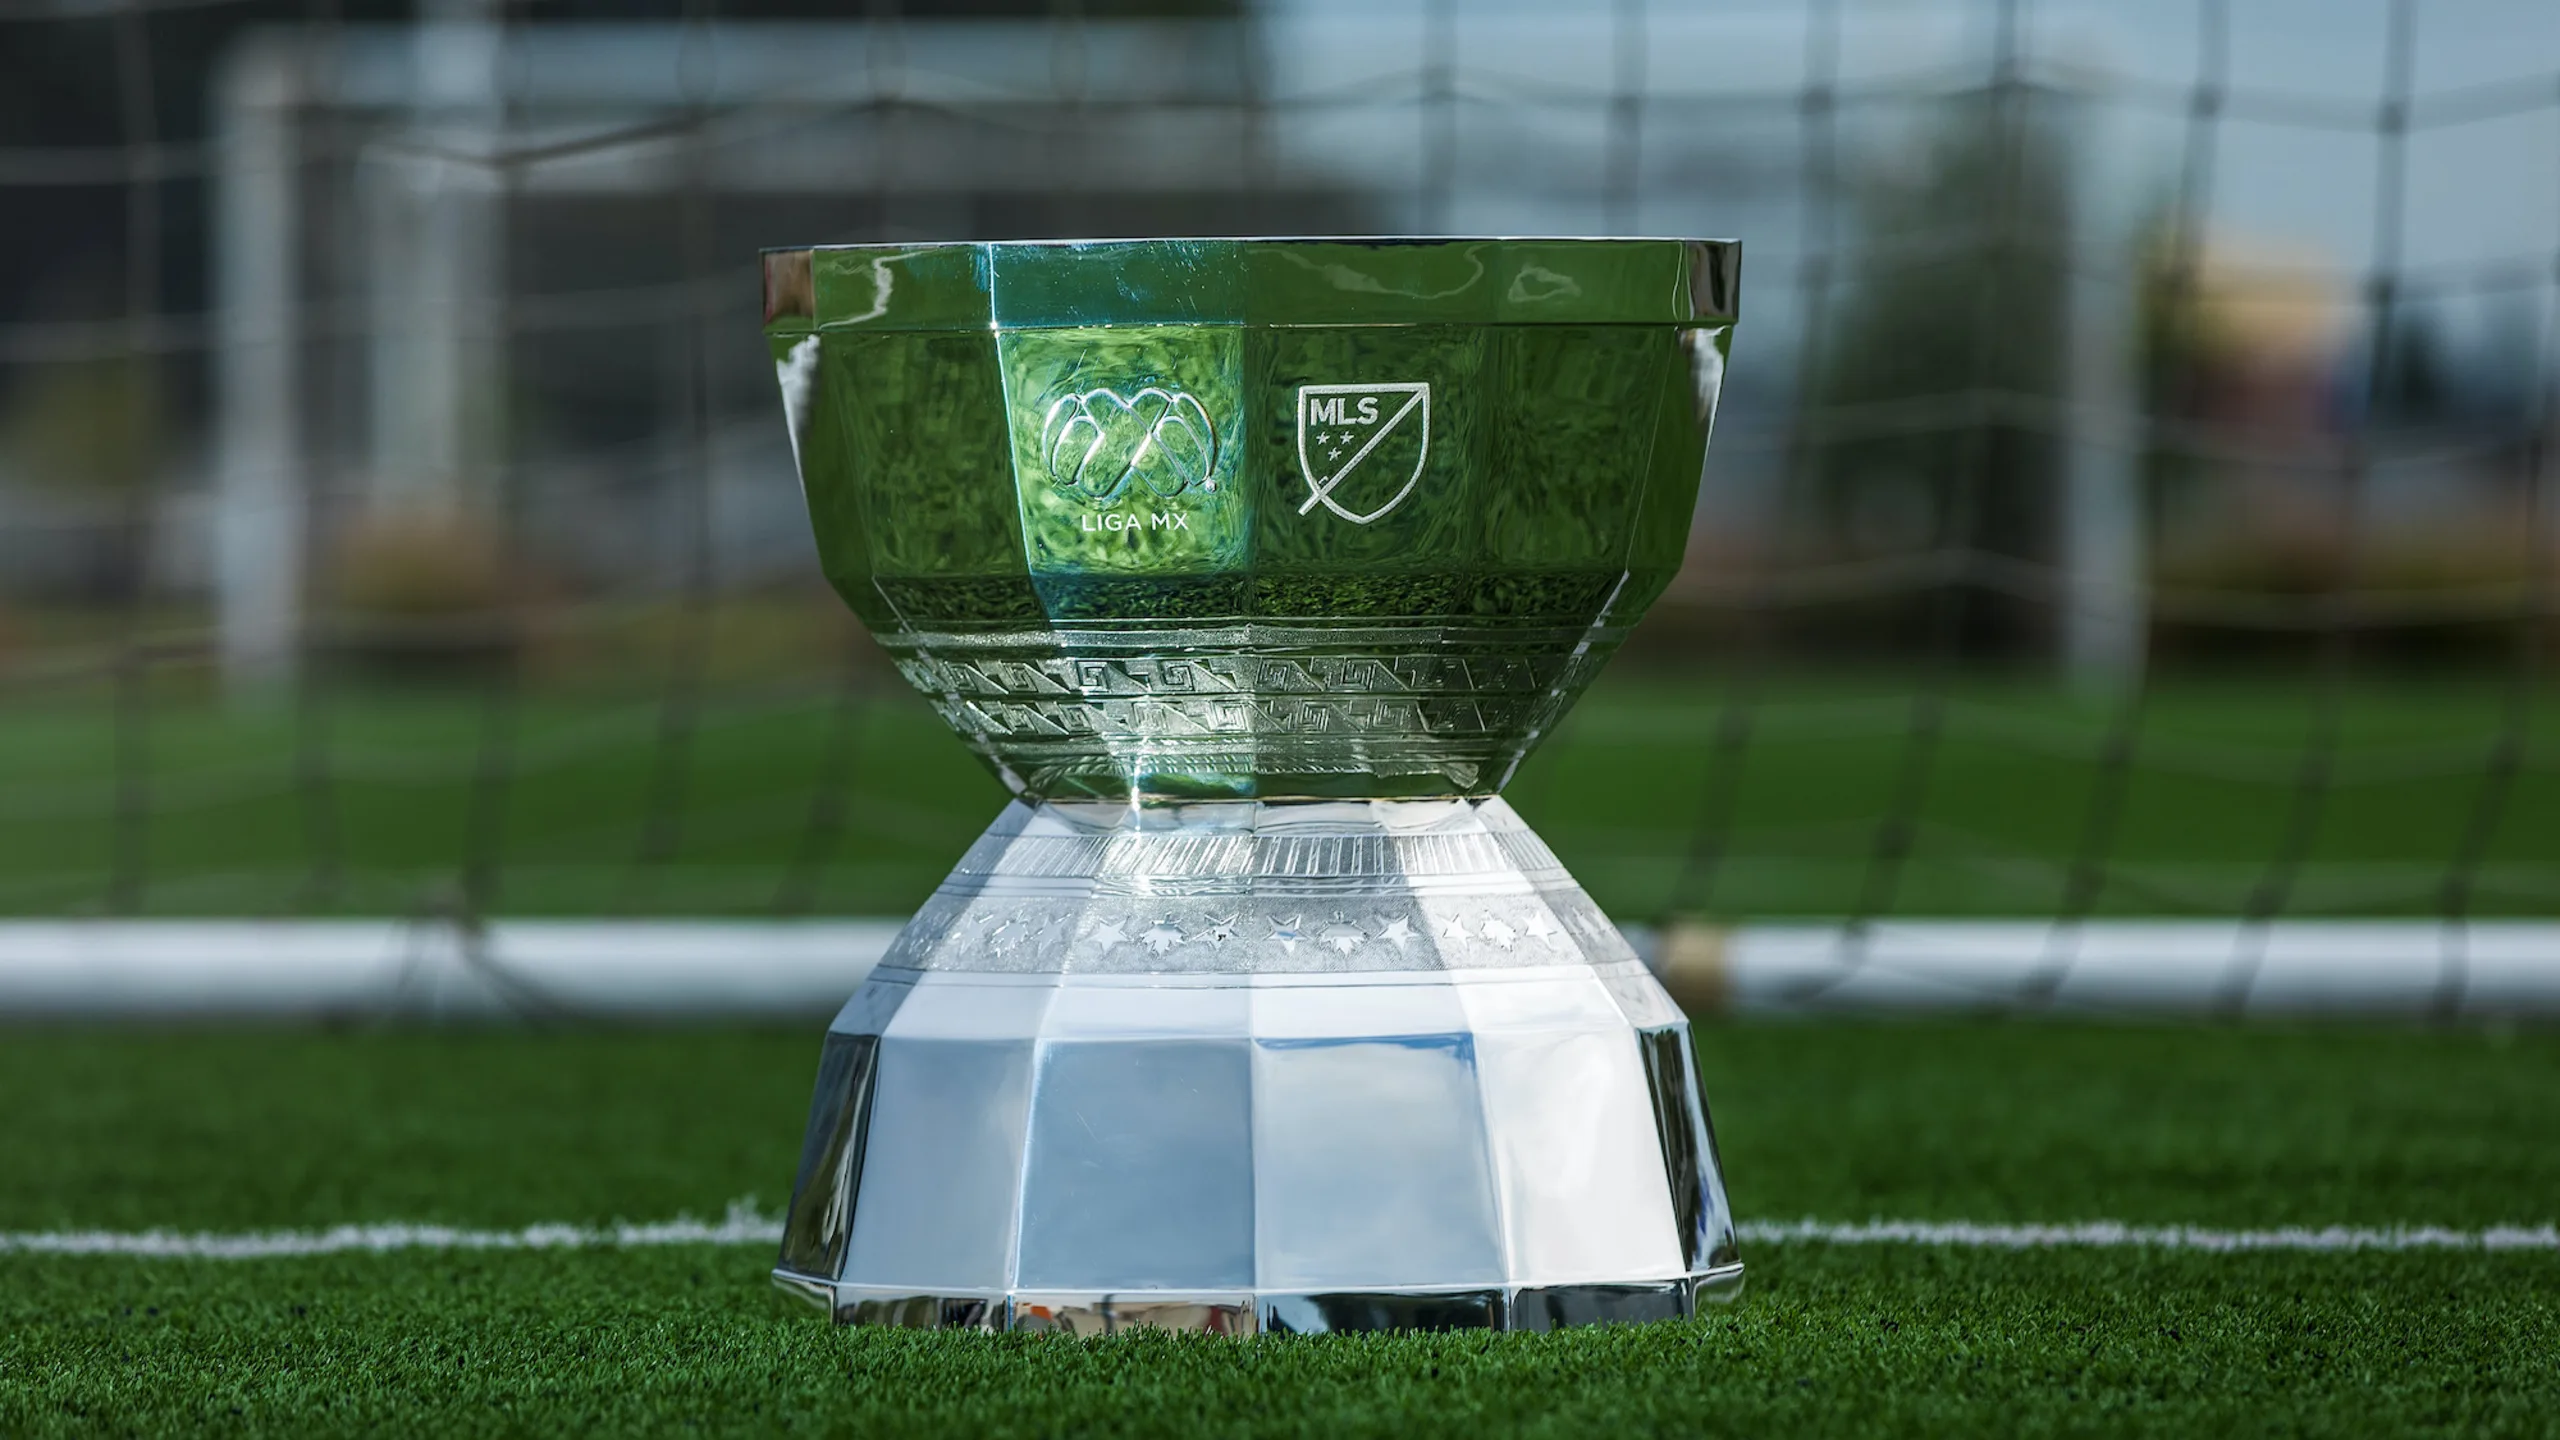 Leagues Cup Unveils 2023 Match Schedule & Bracket Announcement